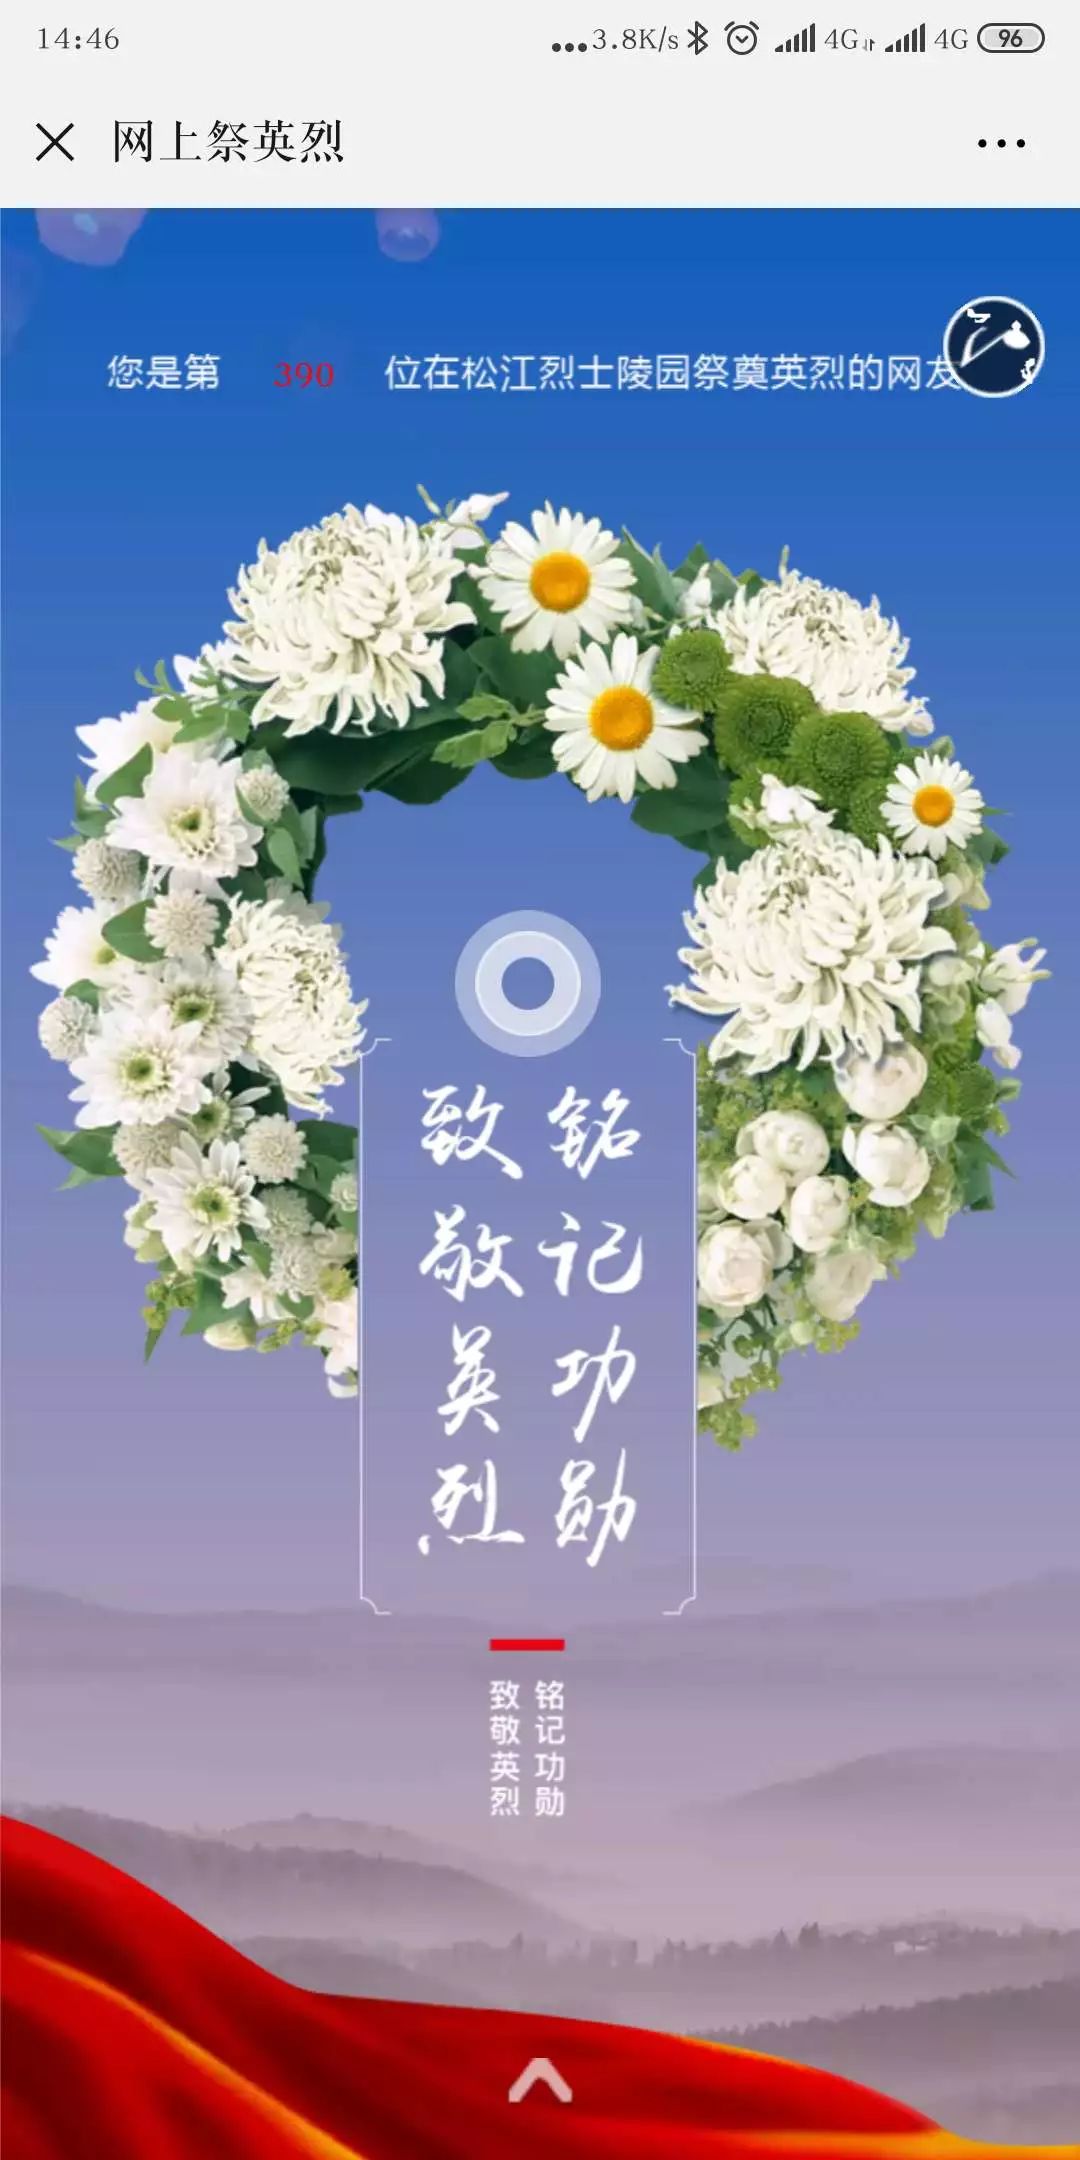 来为先烈点一支烛,献一束花吧!松江烈士陵园网上祭英烈功能已开通